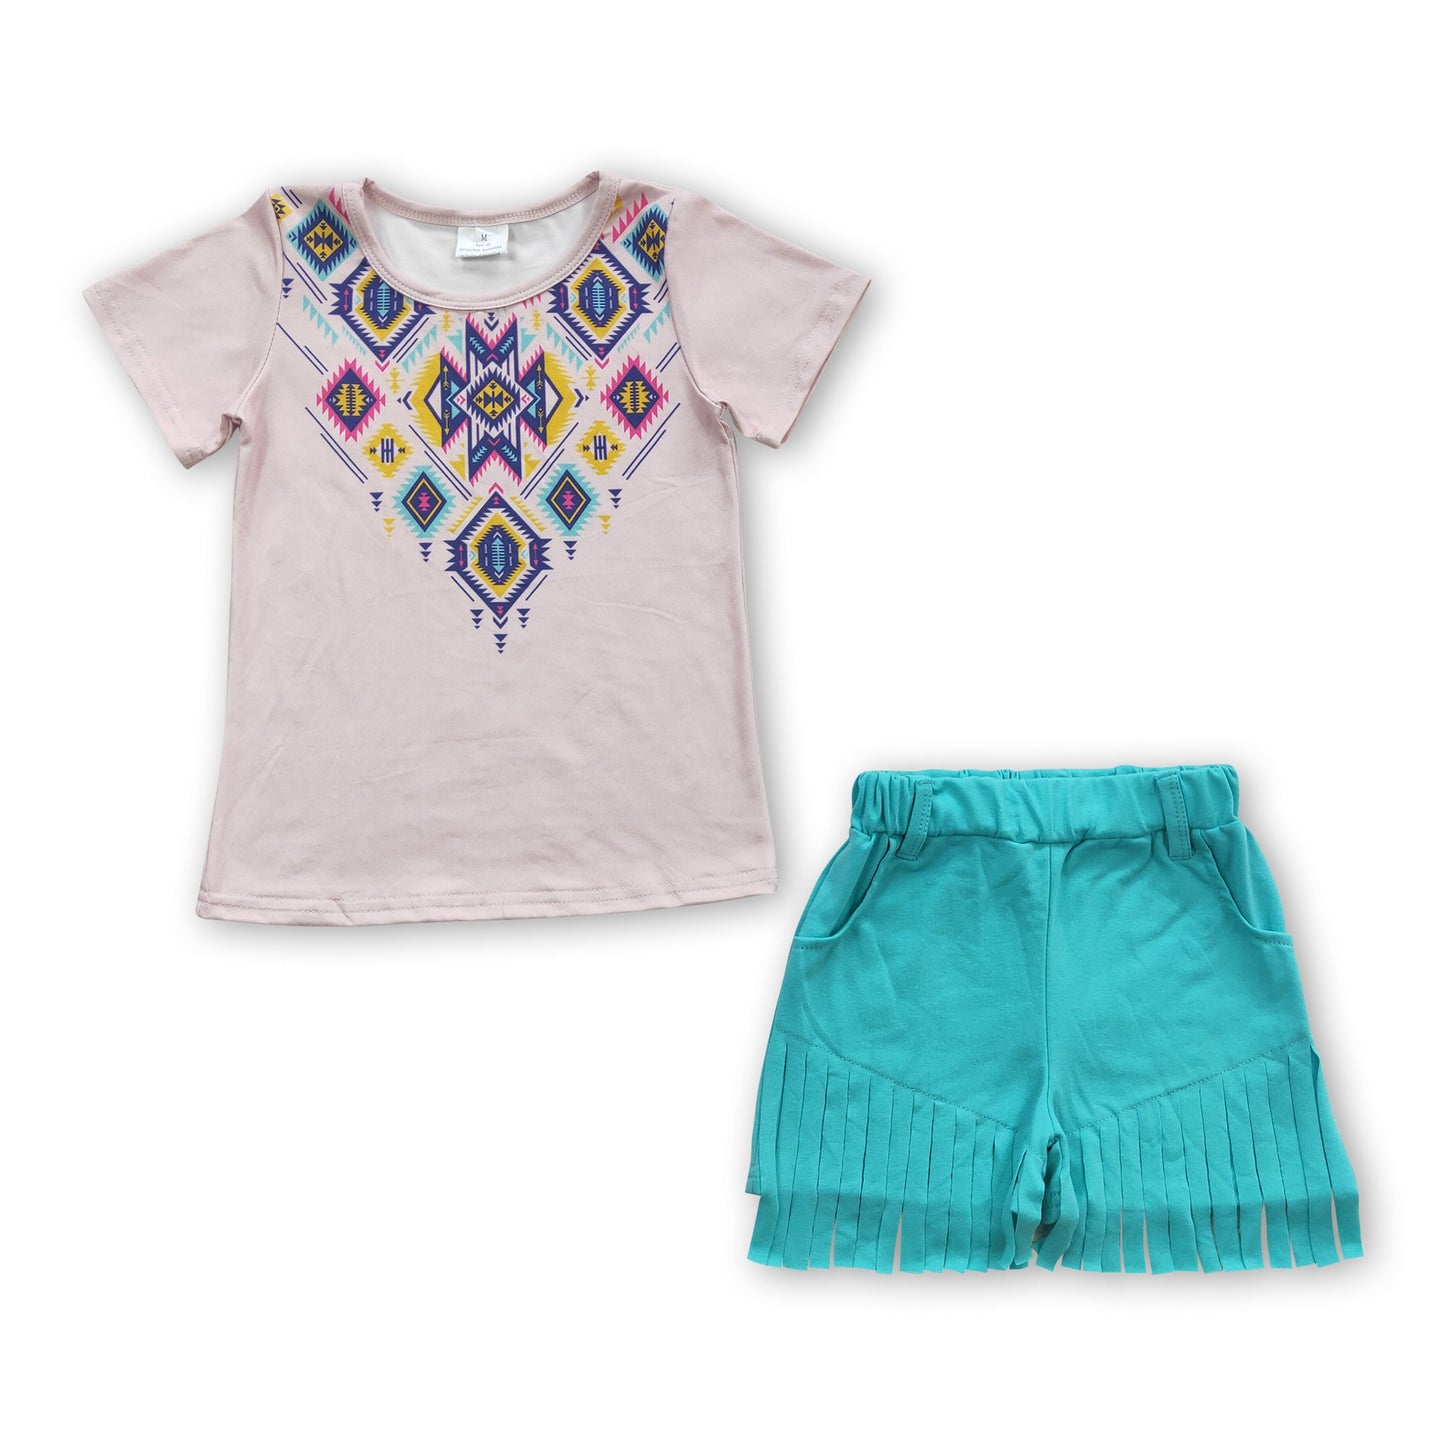 Aztec shirt tassels shorts kids girls outfits